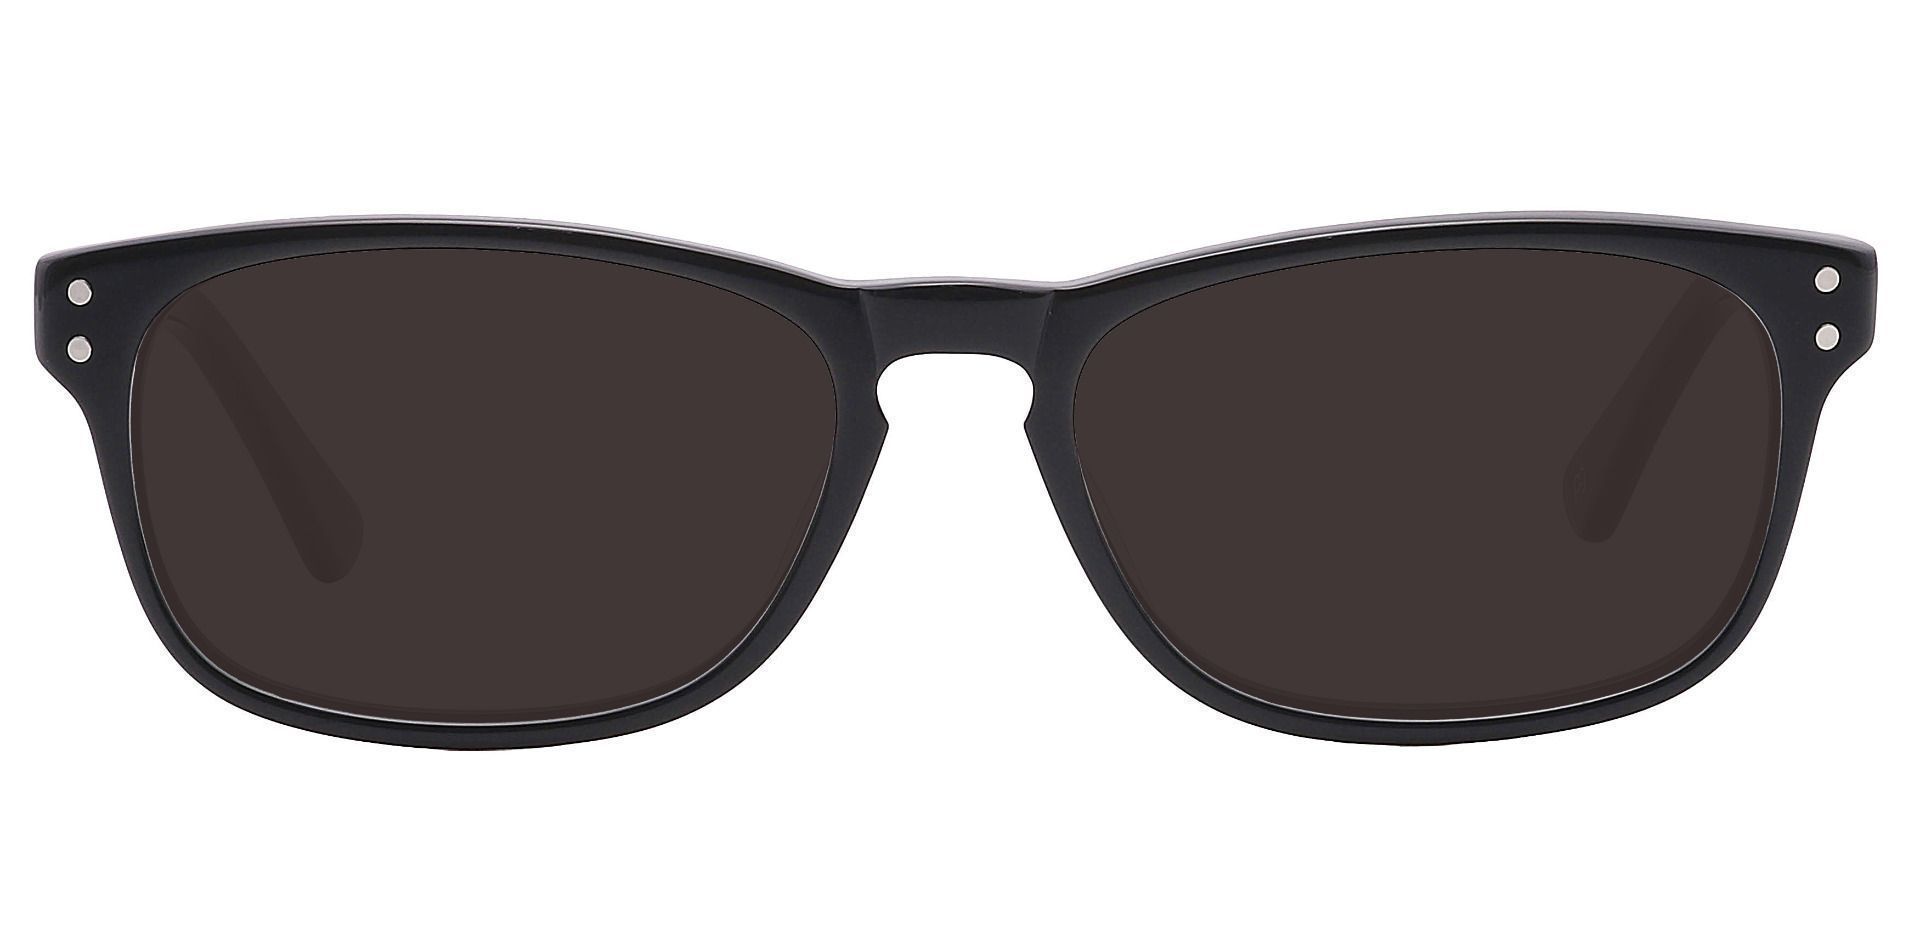 Morris Rectangle Progressive Sunglasses - Black Frame With Gray Lenses